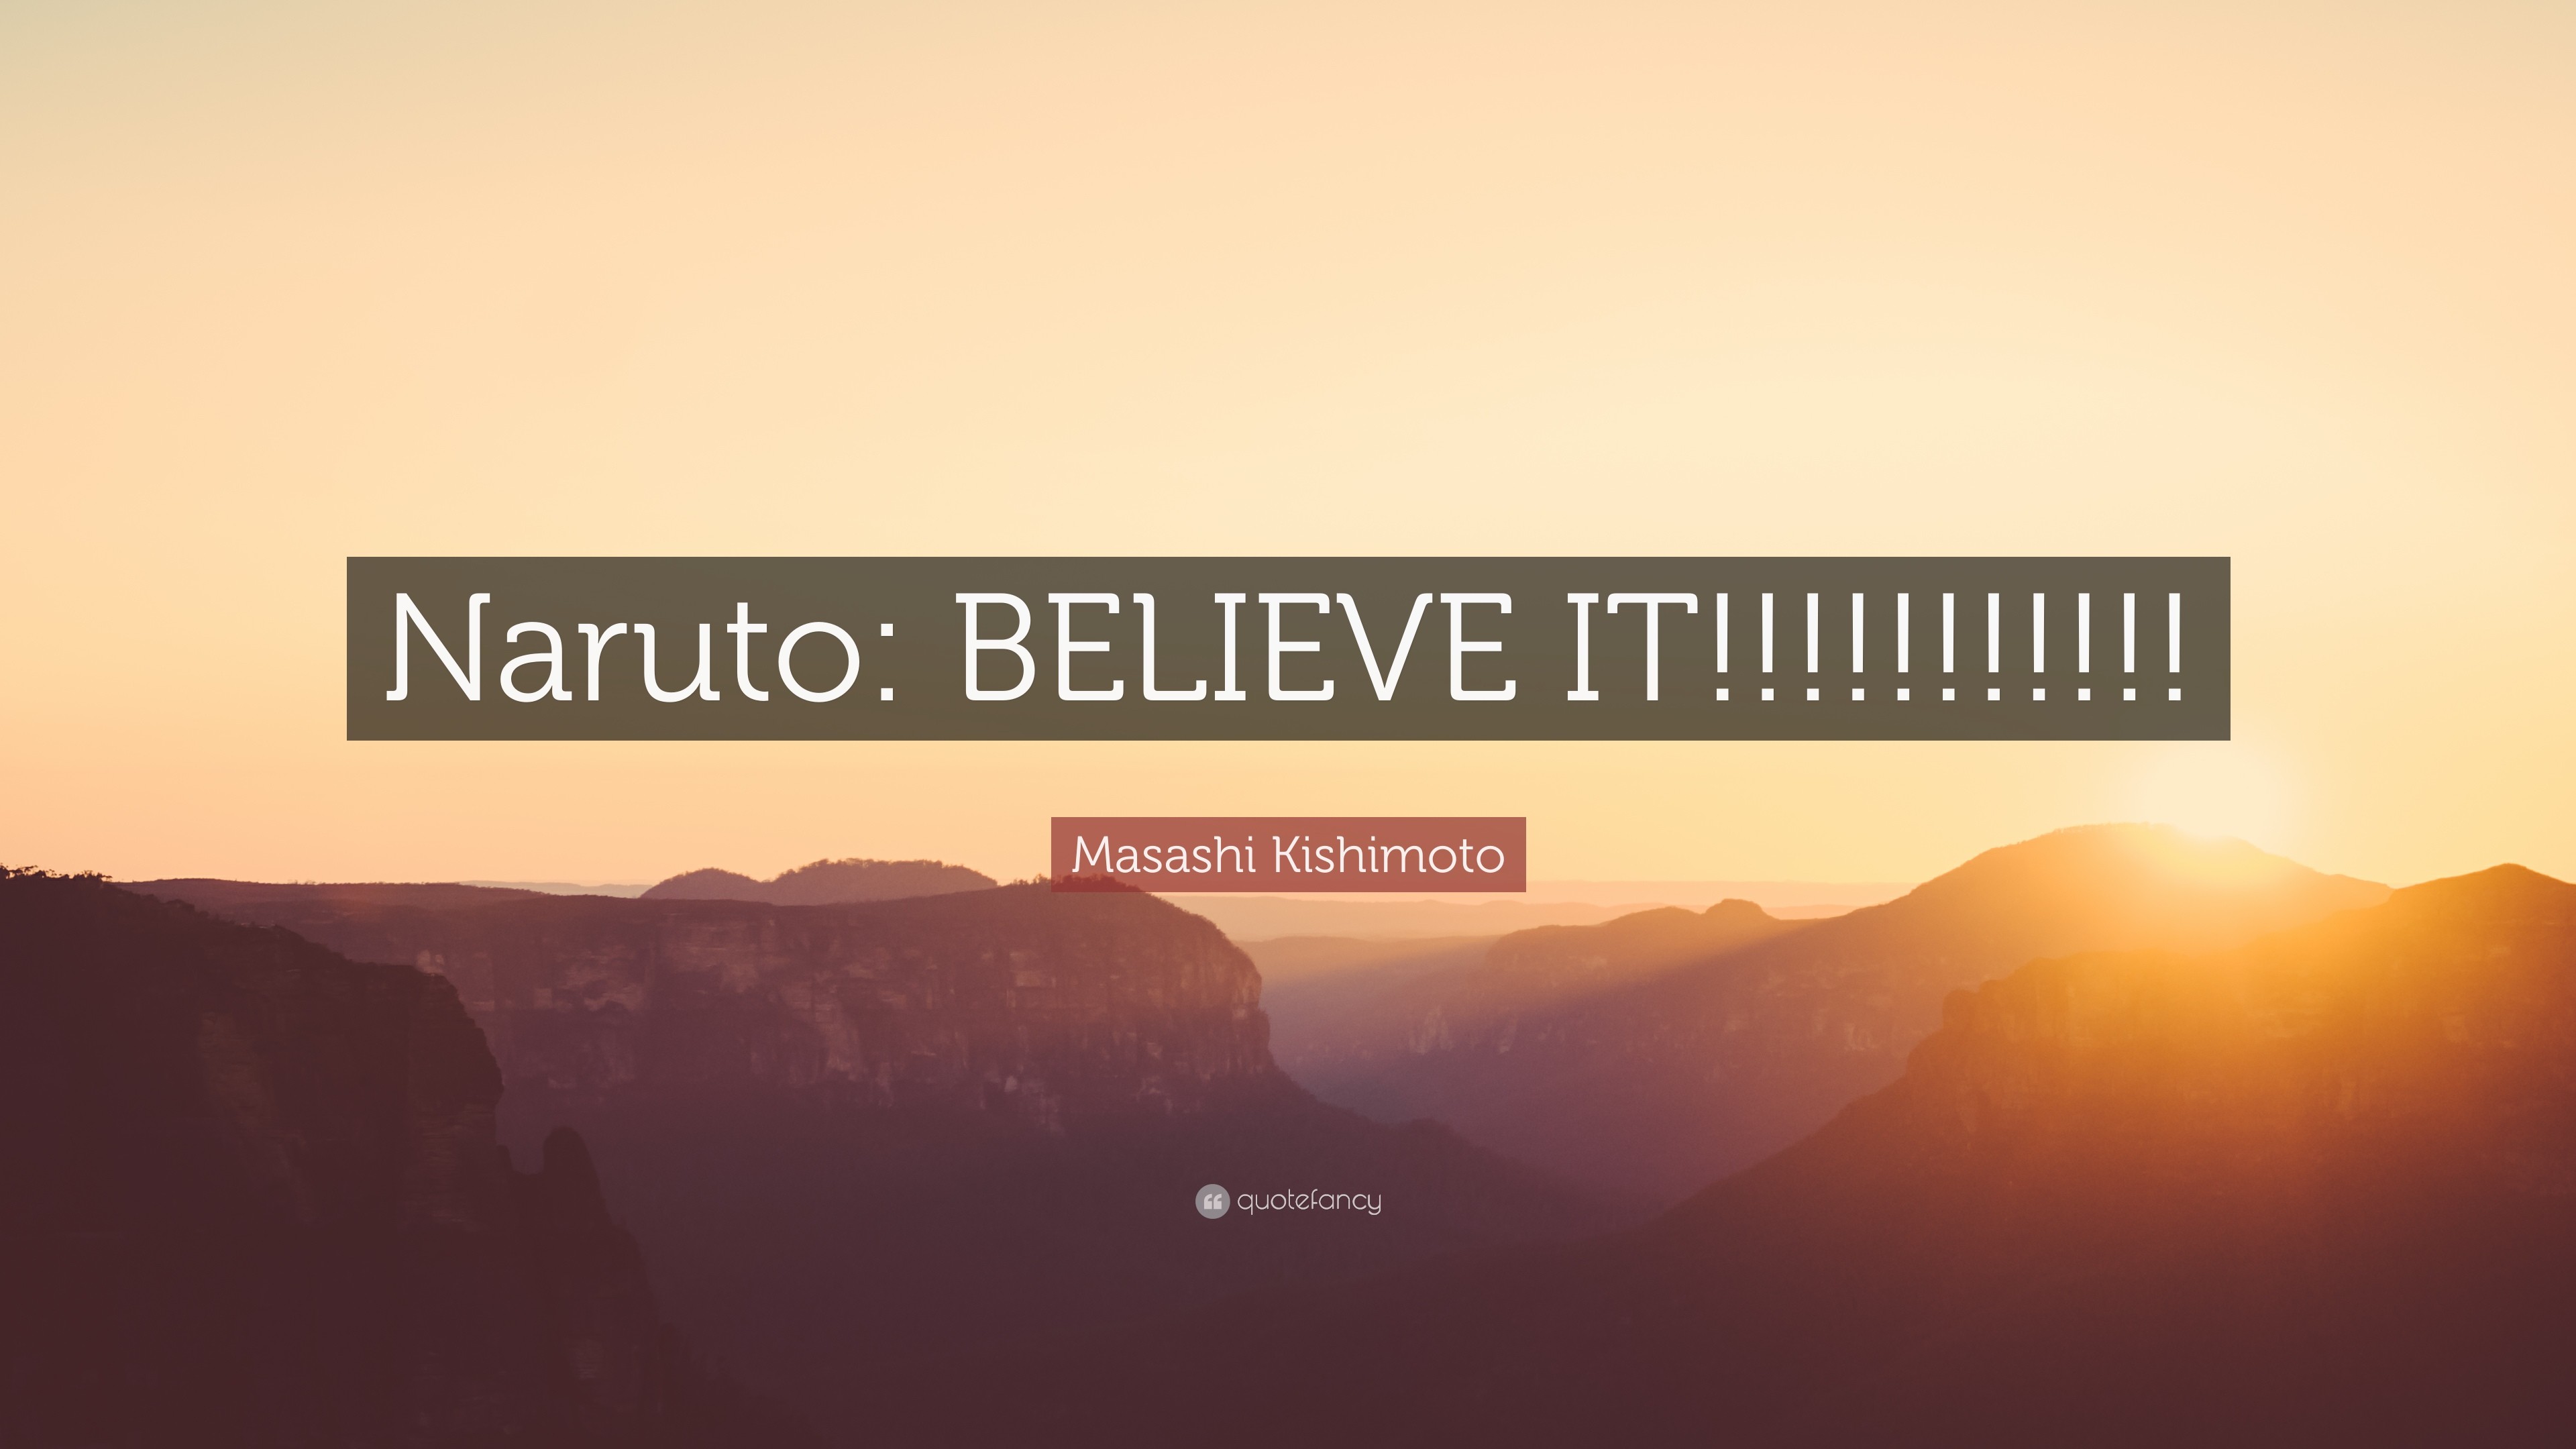 3840x2160 Masashi Kishimoto Quote: “Naruto: BELIEVE IT!